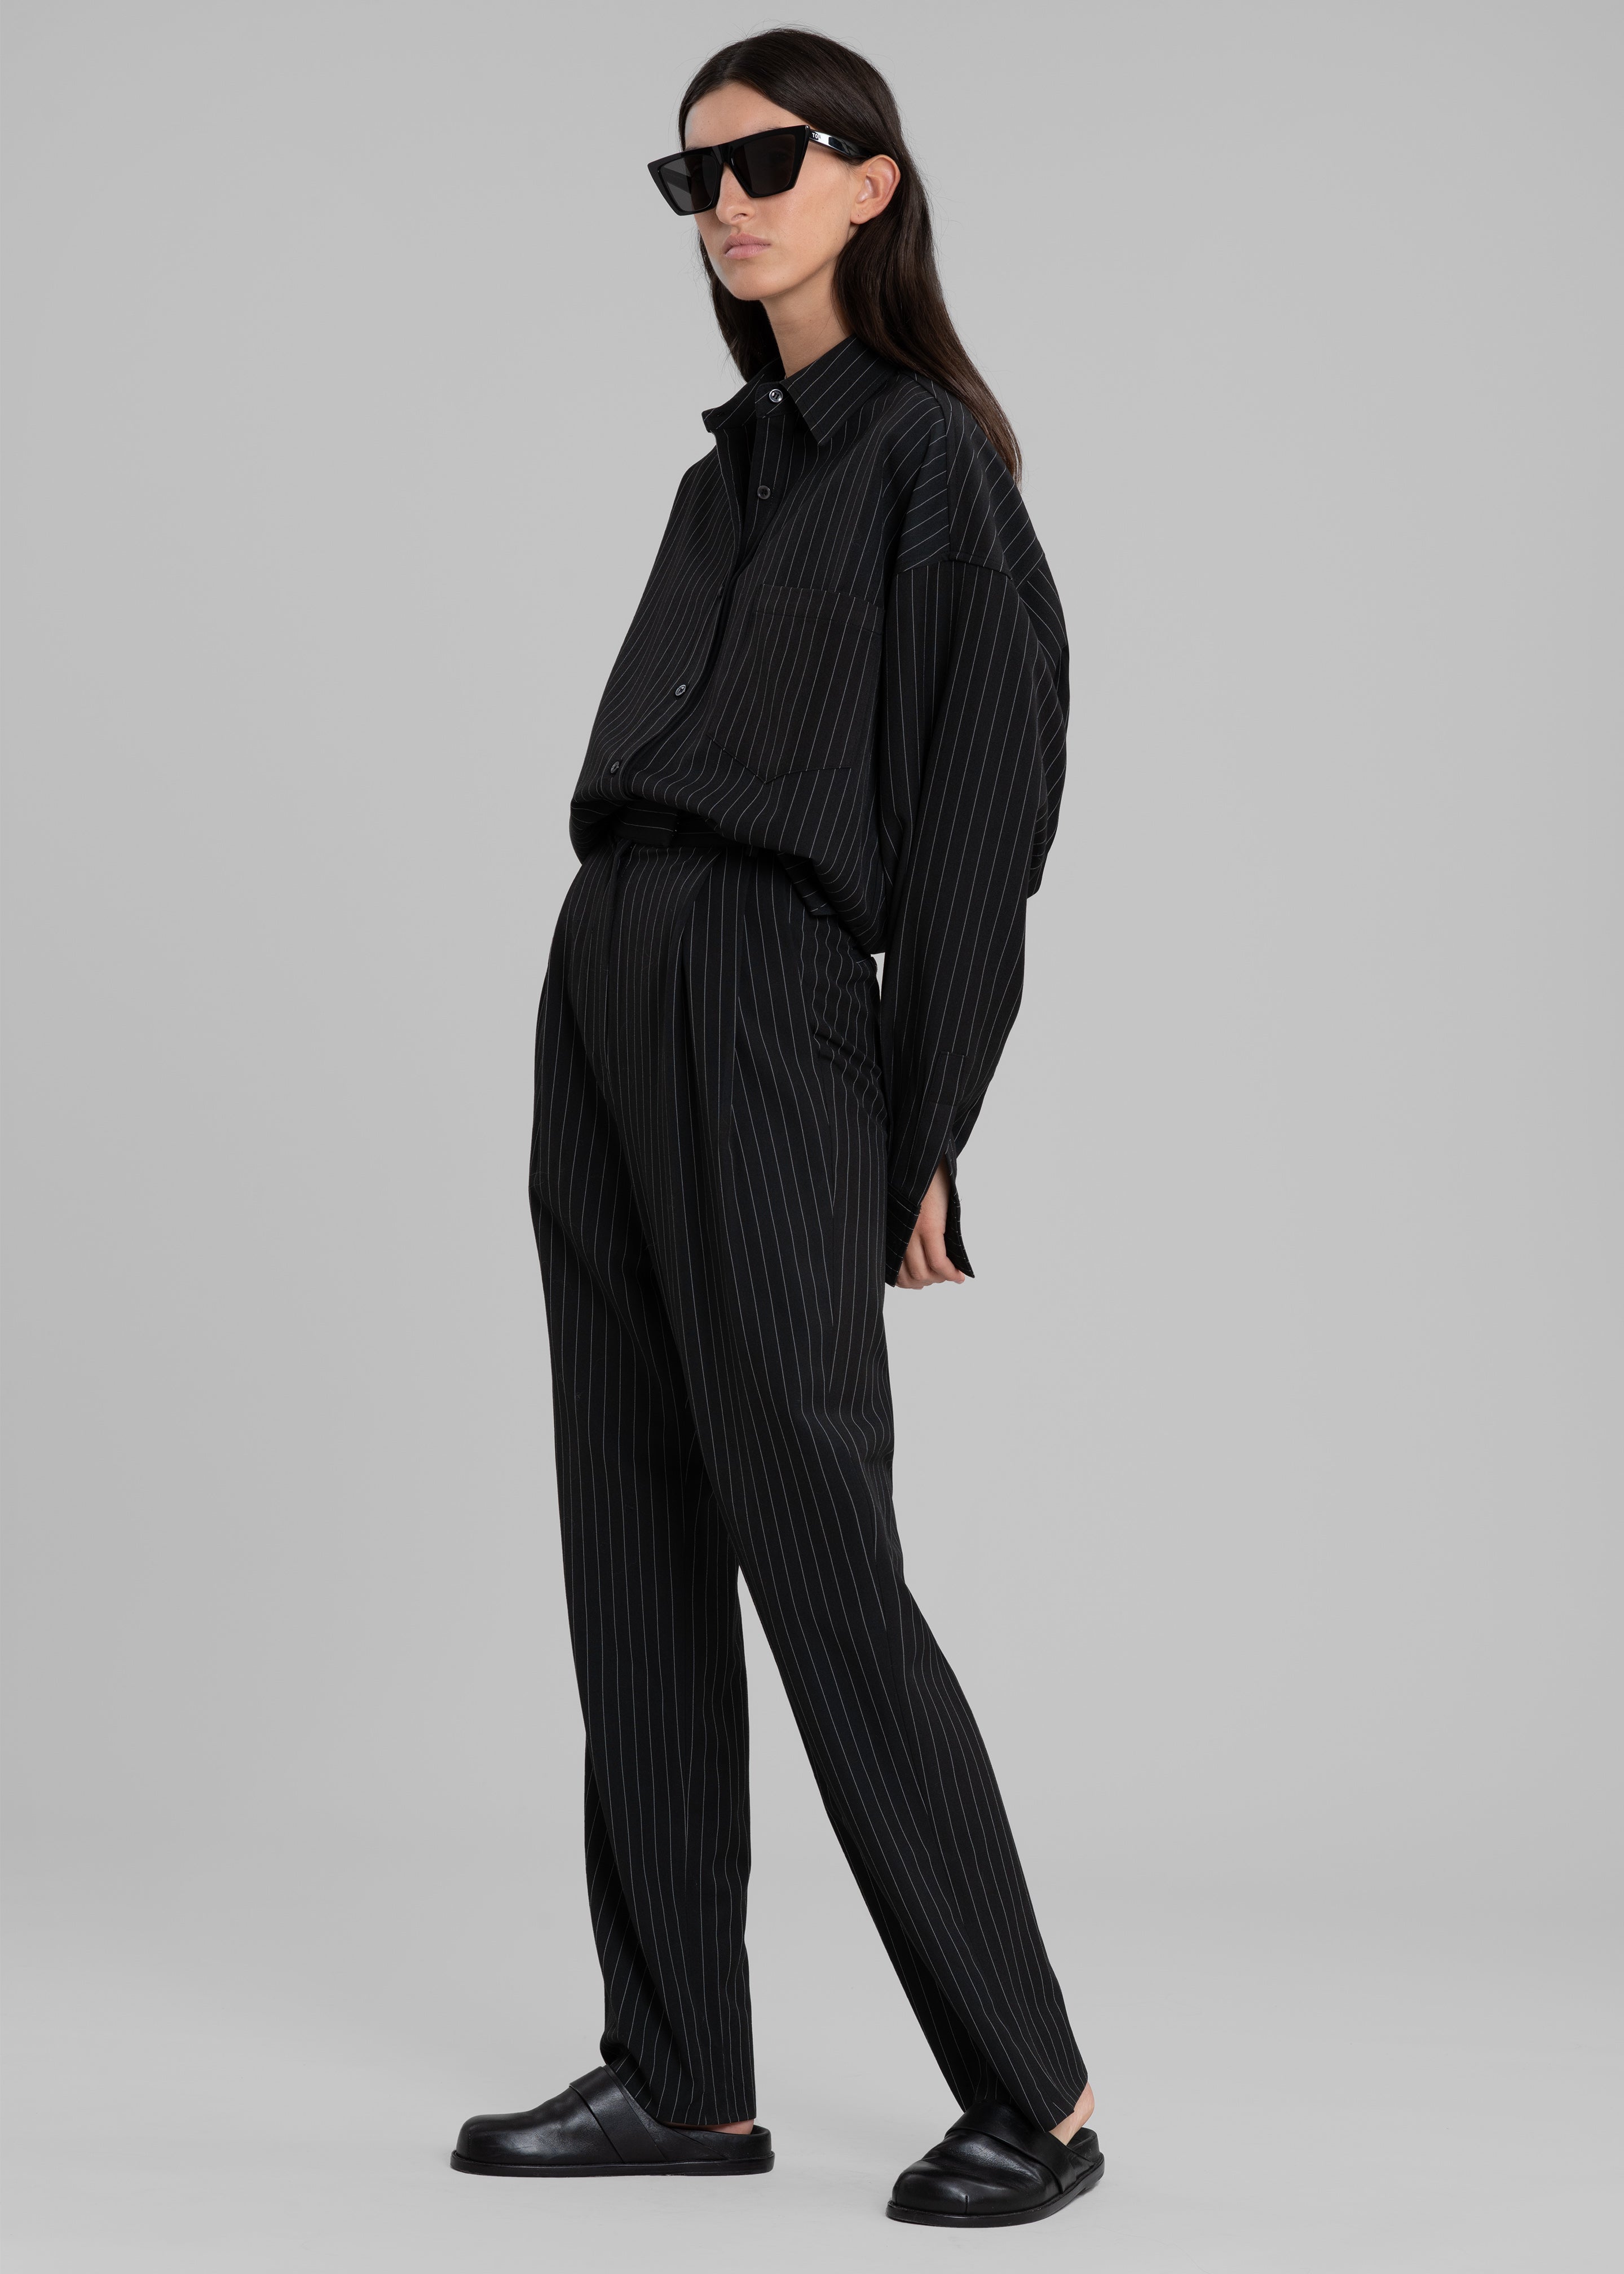 Bea Fluid Pinstripe Suit Pants - Black/White - 1